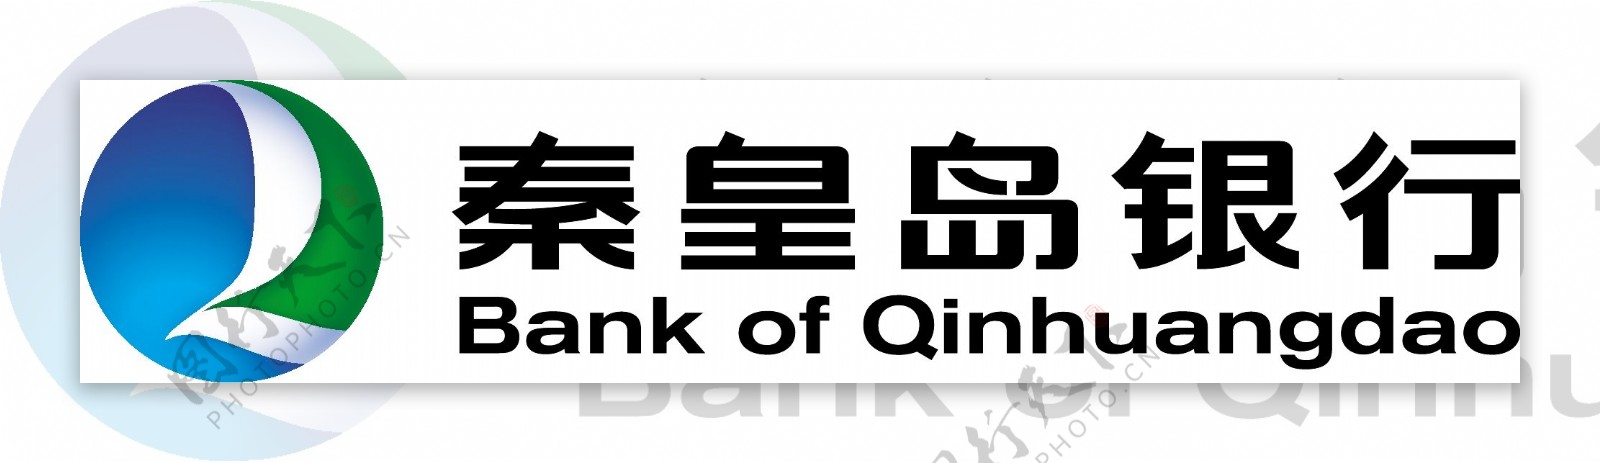 秦皇岛银行标志logo